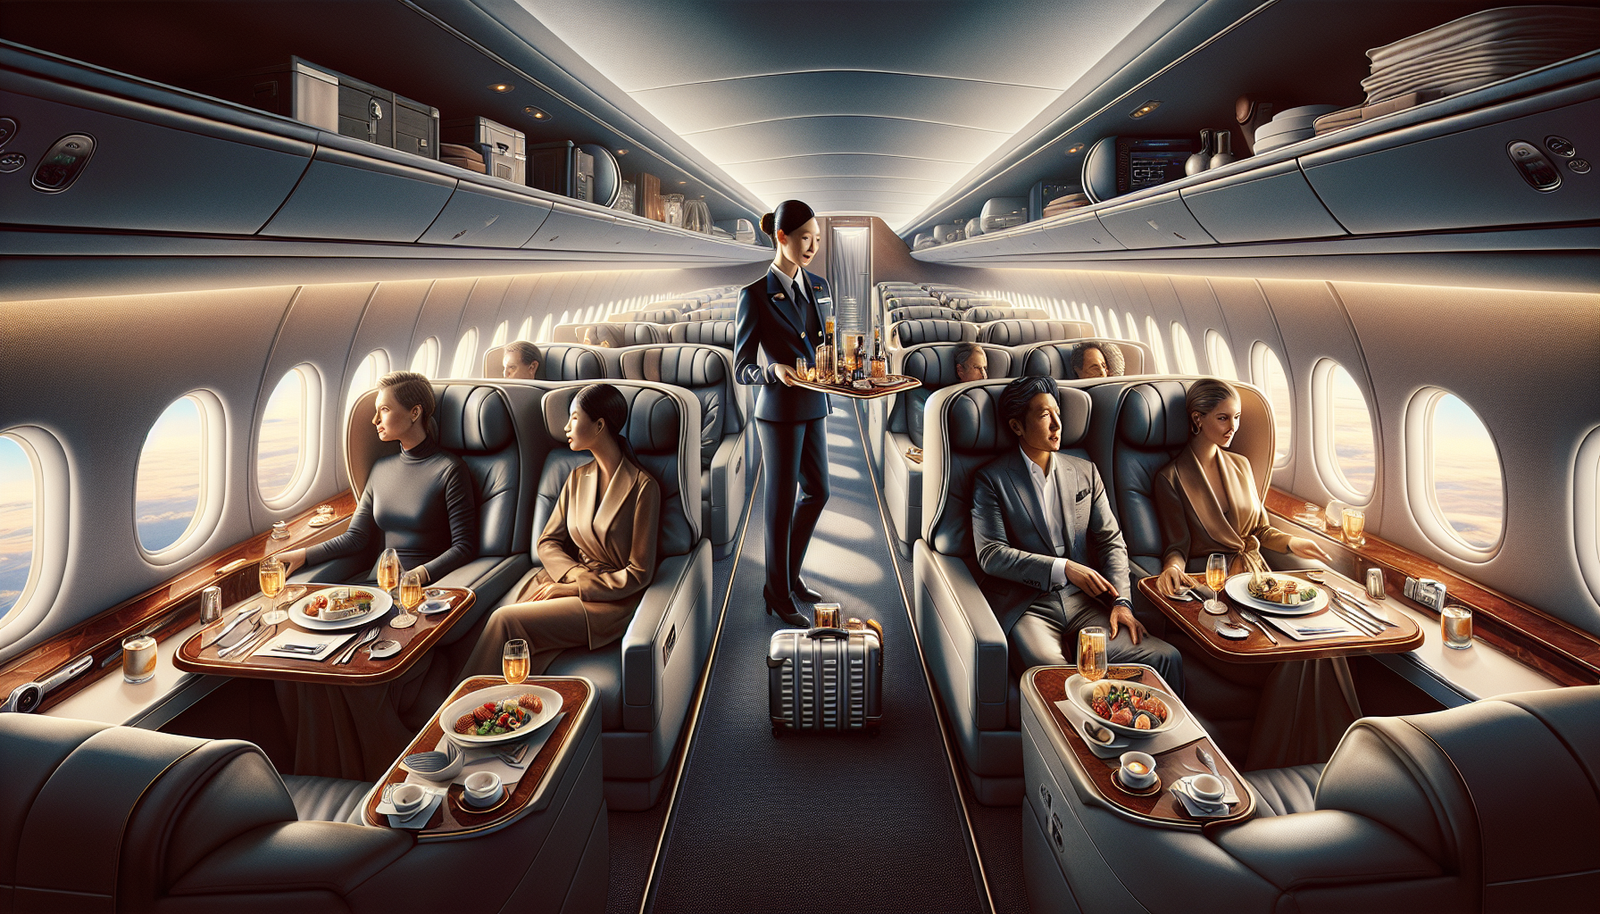 Passengers enjoying the amenities in a charter flight